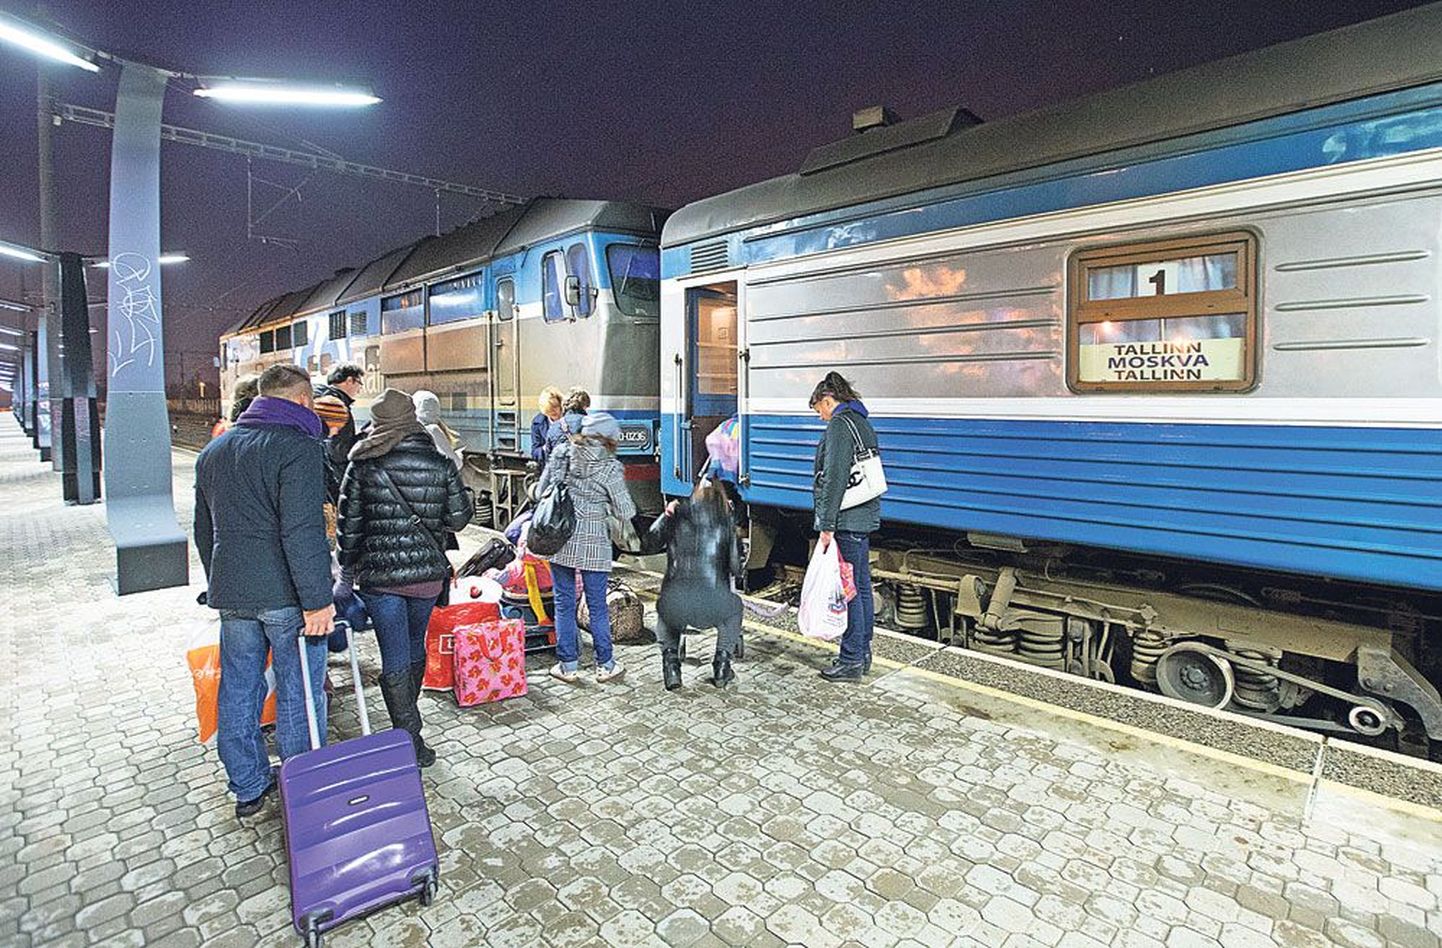 Tallinna-Moskva liinil kurseerib kaks GoRaili rongi, mis väljuvad mõlemast suunast õhtupoolikul. Reisijad tõttamas eile õhtul kell 18 Balti jaamast väljunud rongile.